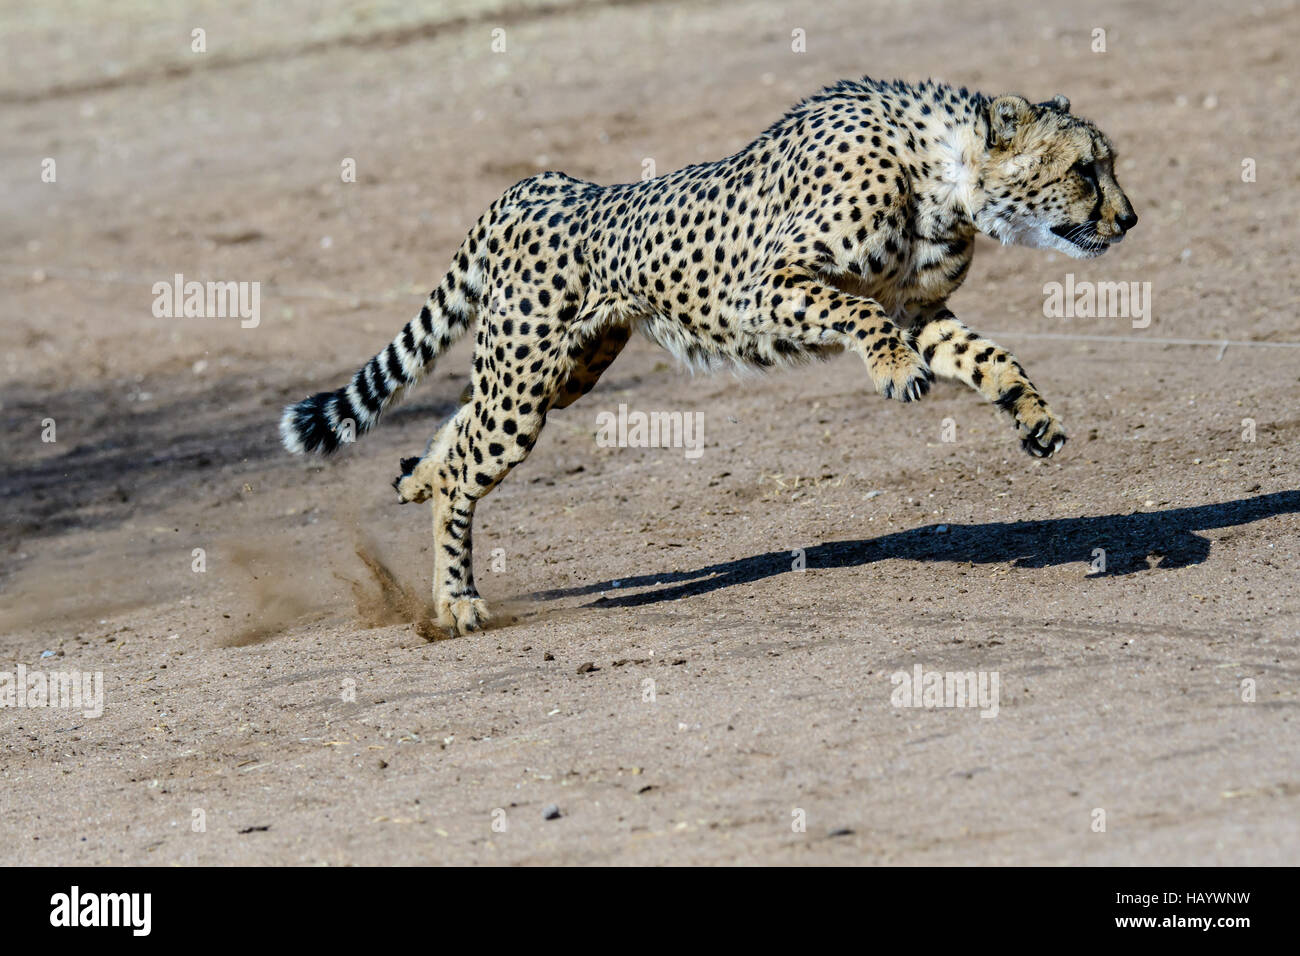 Cheetah running at full speed Stock Photo